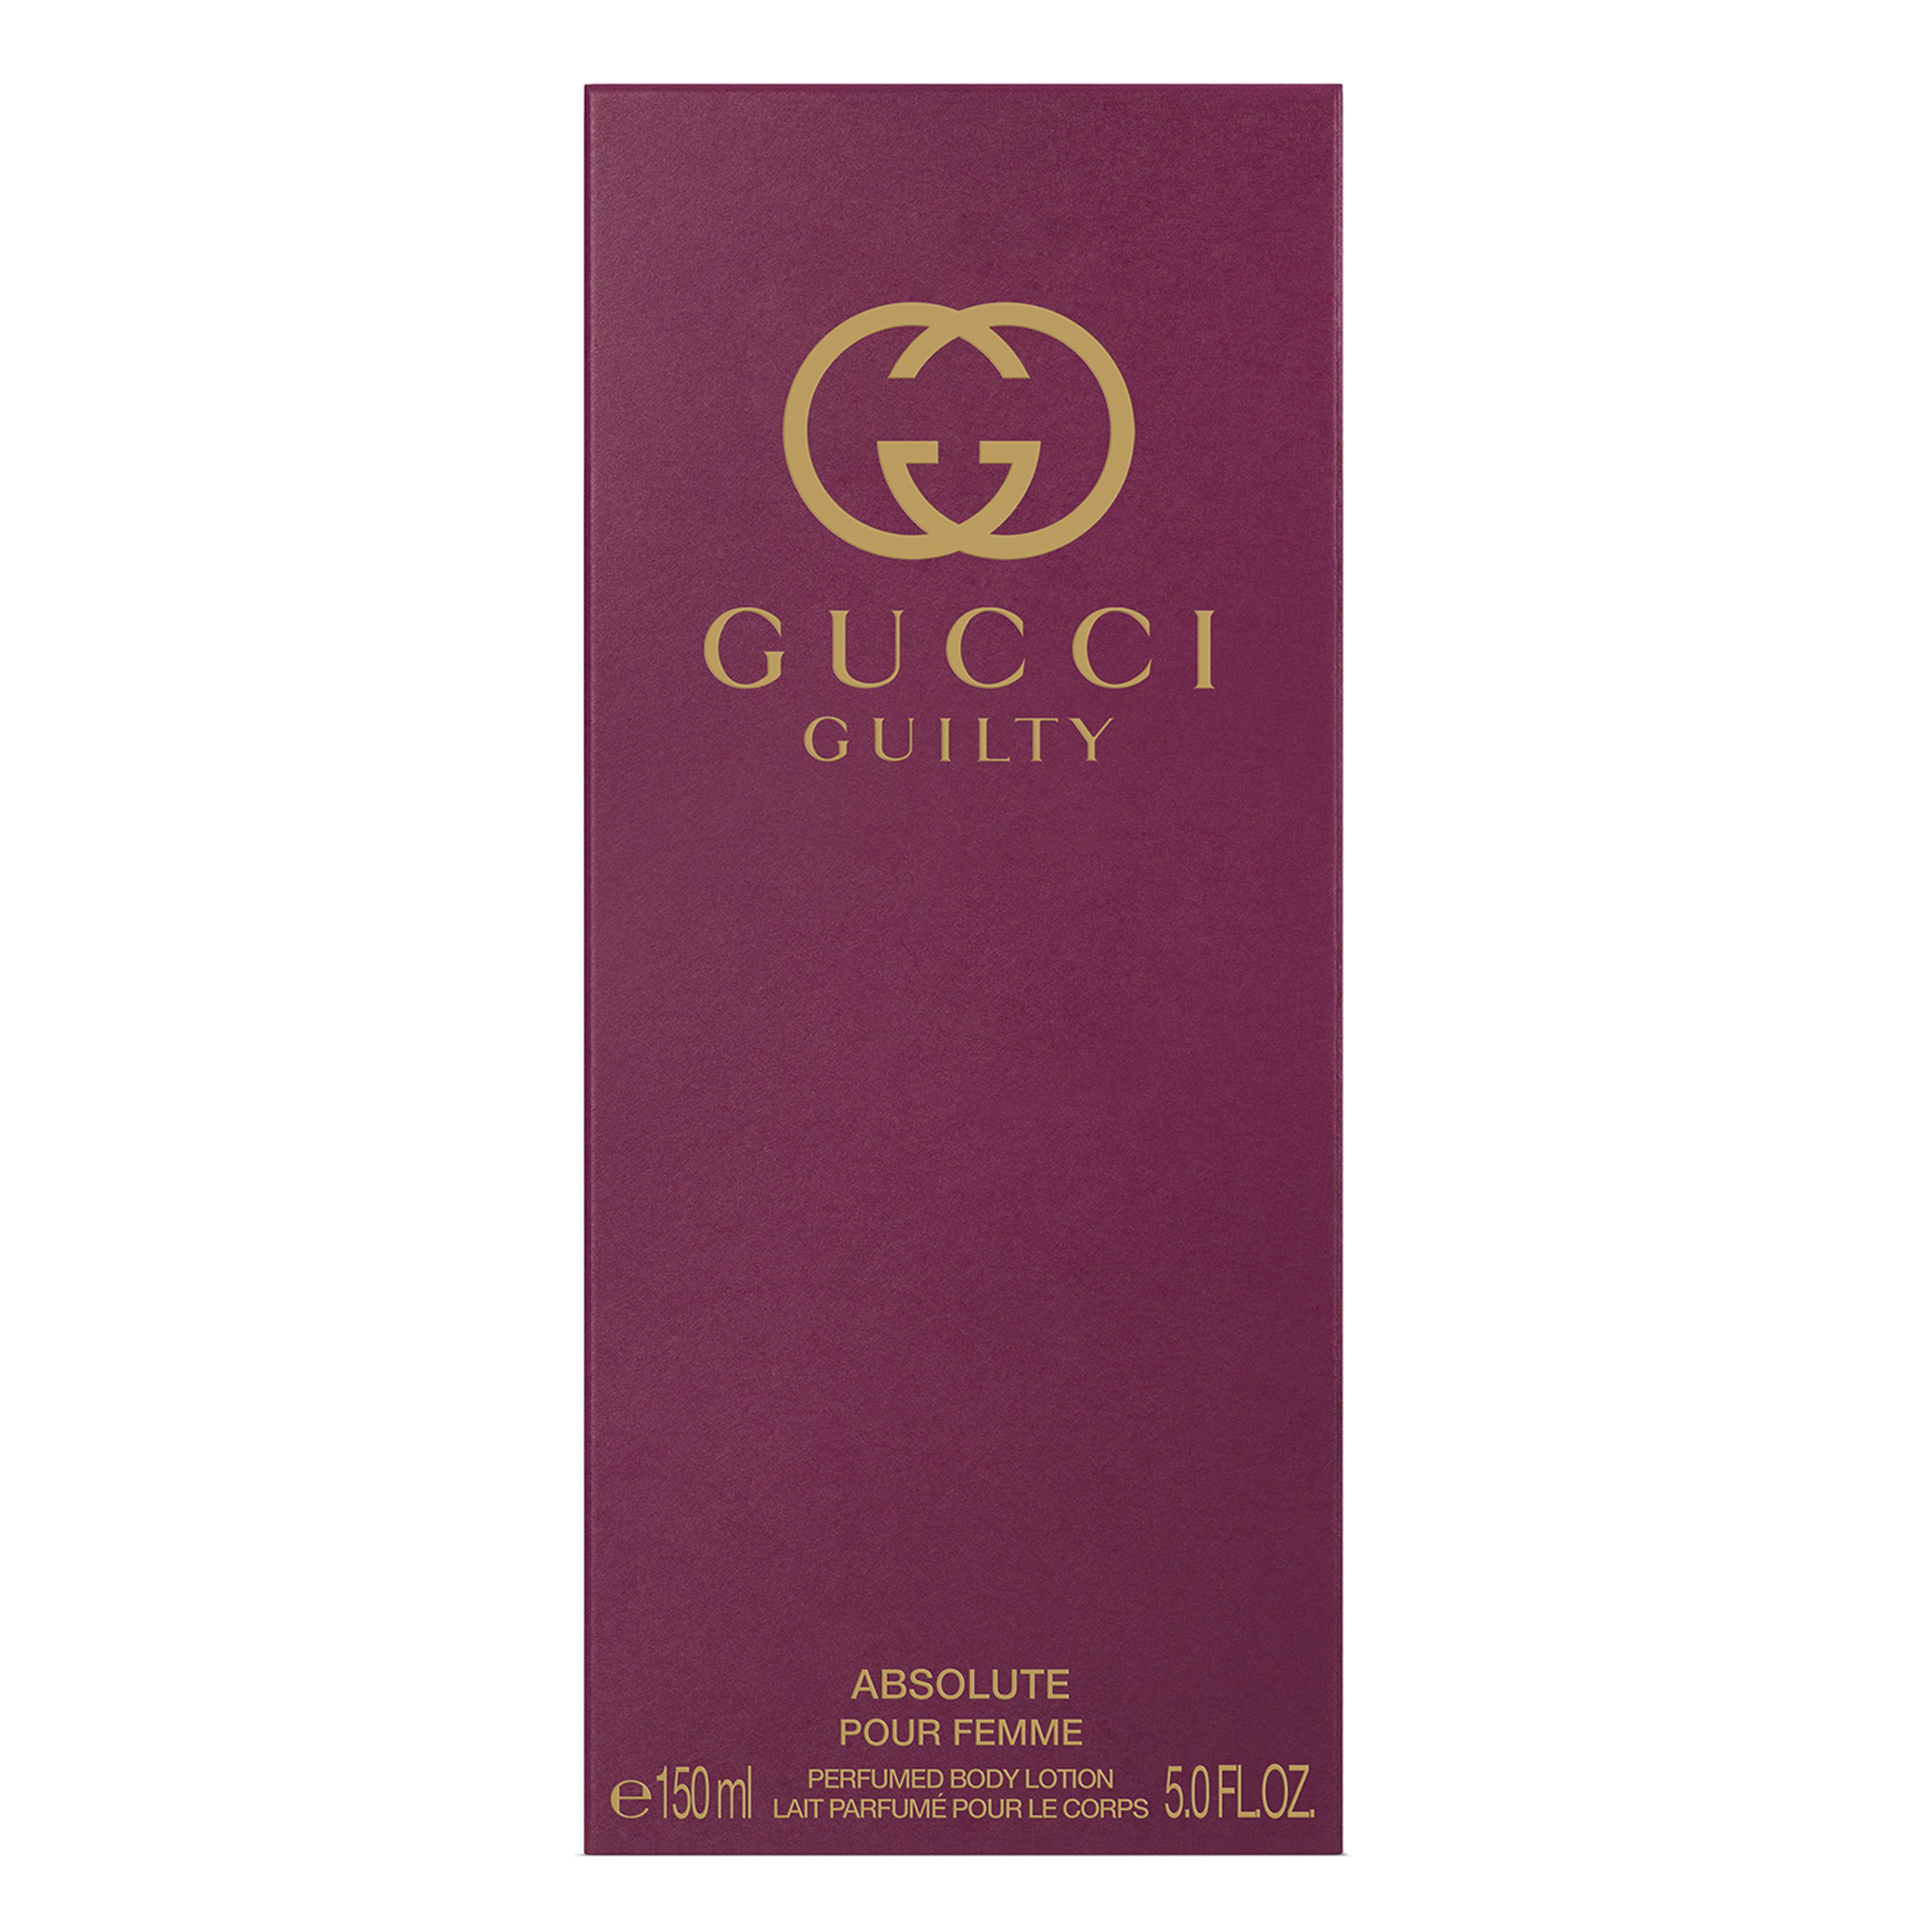 Gucci Gucci Guilty Absolute Pour Femme Lozione Corpo 3